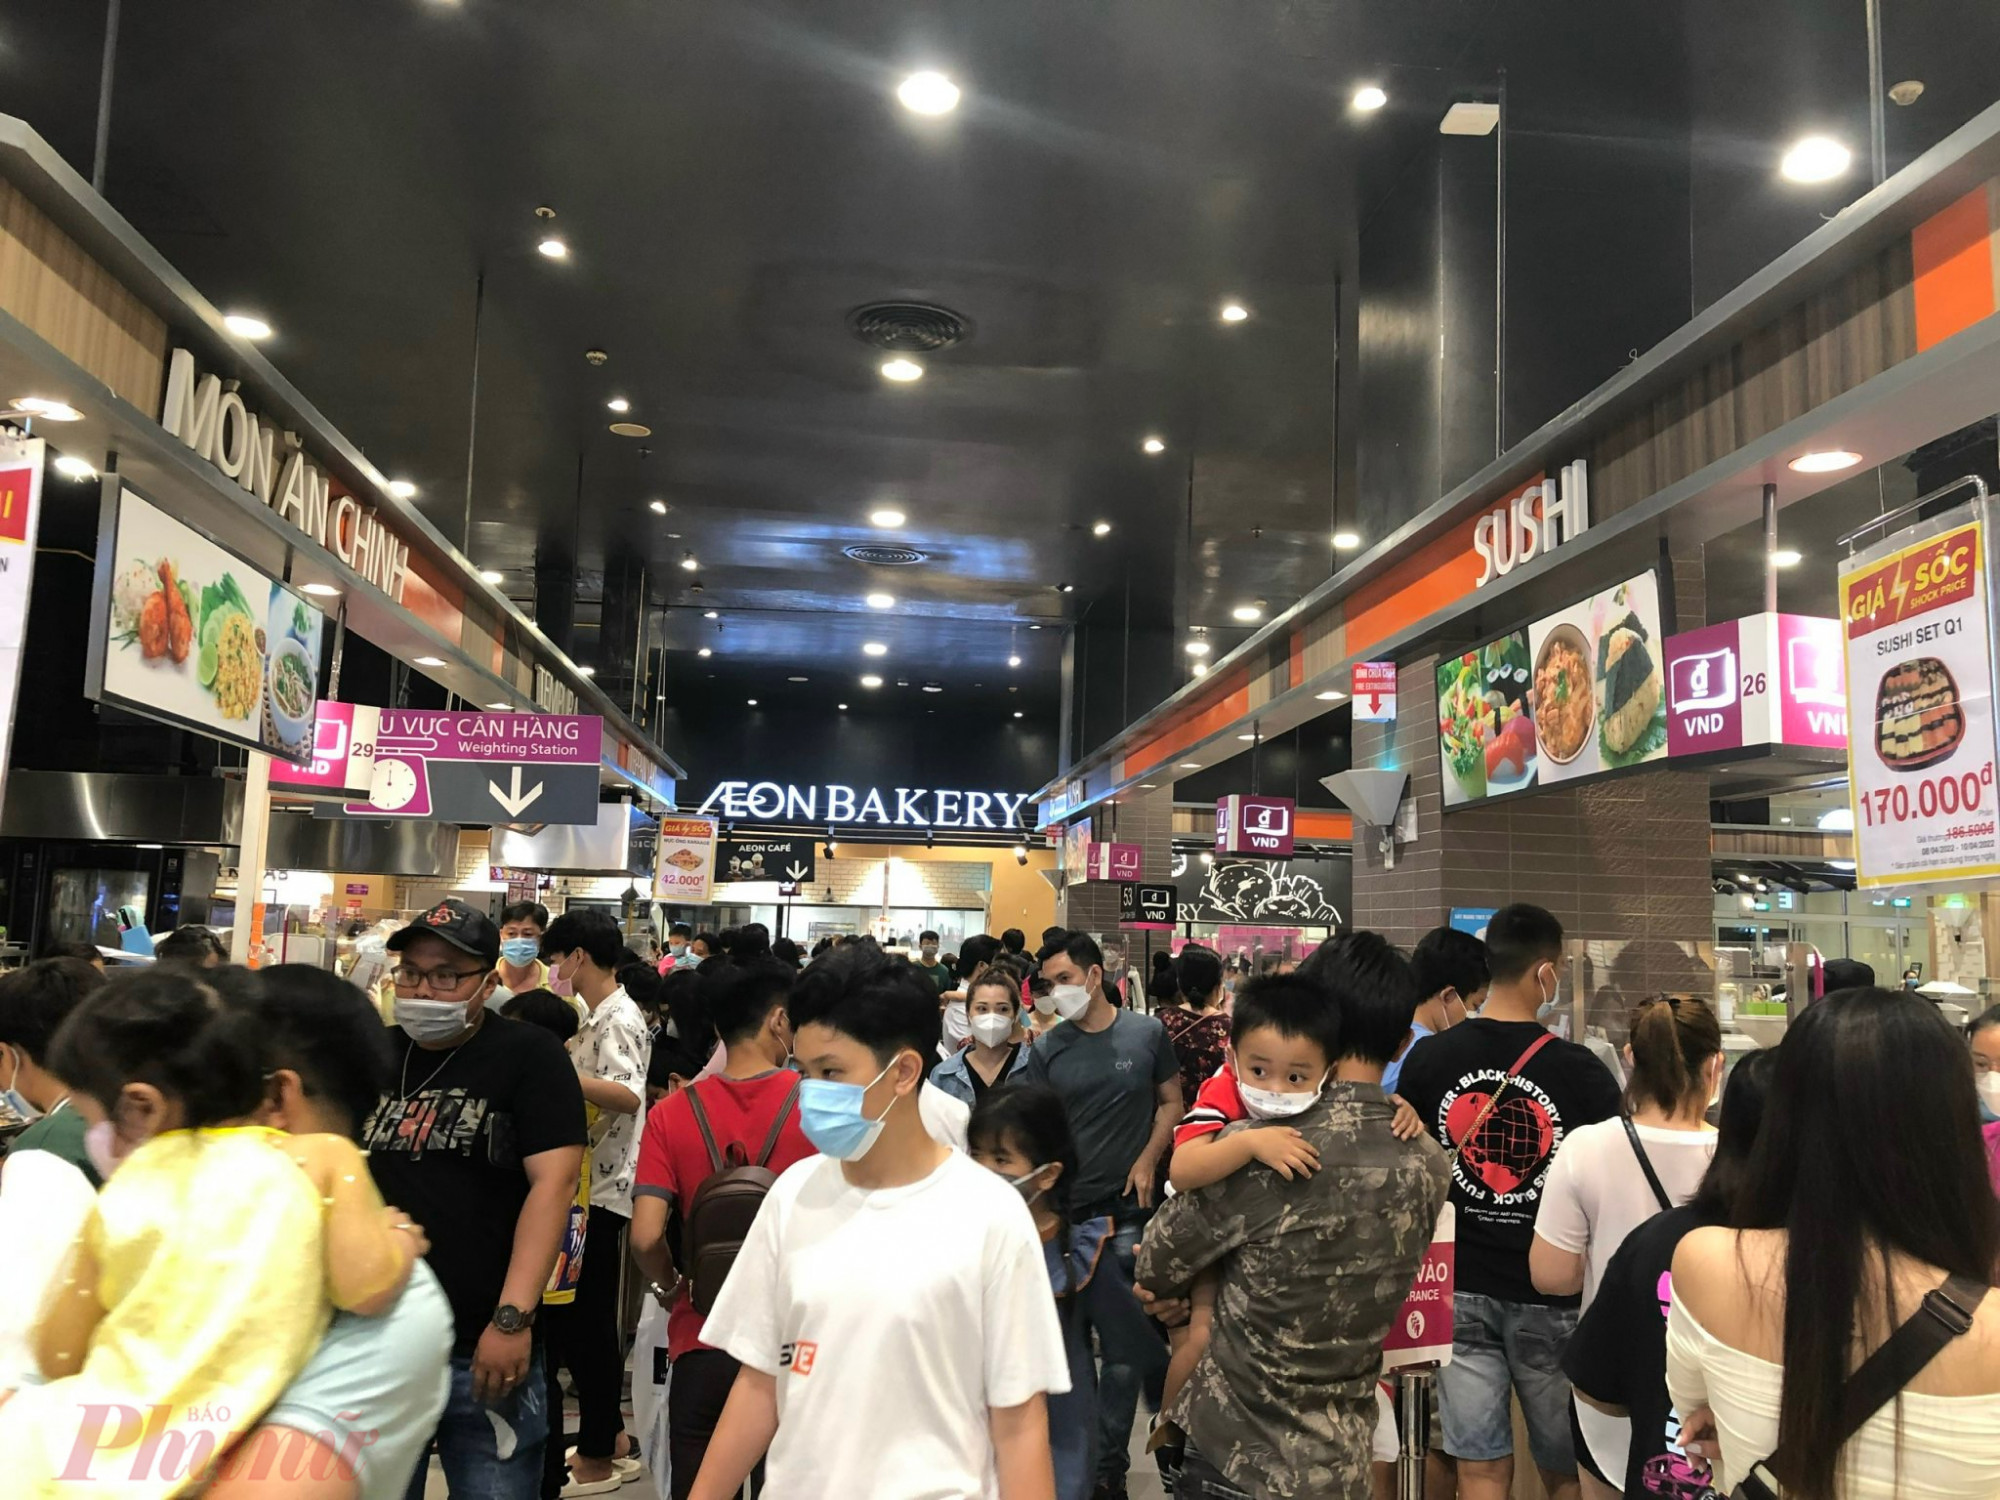 Tại AeonMall (quận Bình Tân), khách đến mua sắm, ăn uống đông đột biến, nhiều khu ẩm thực như bánh ngọt, shushi, gà rán… luôn trong tình chen chân không lọt. 